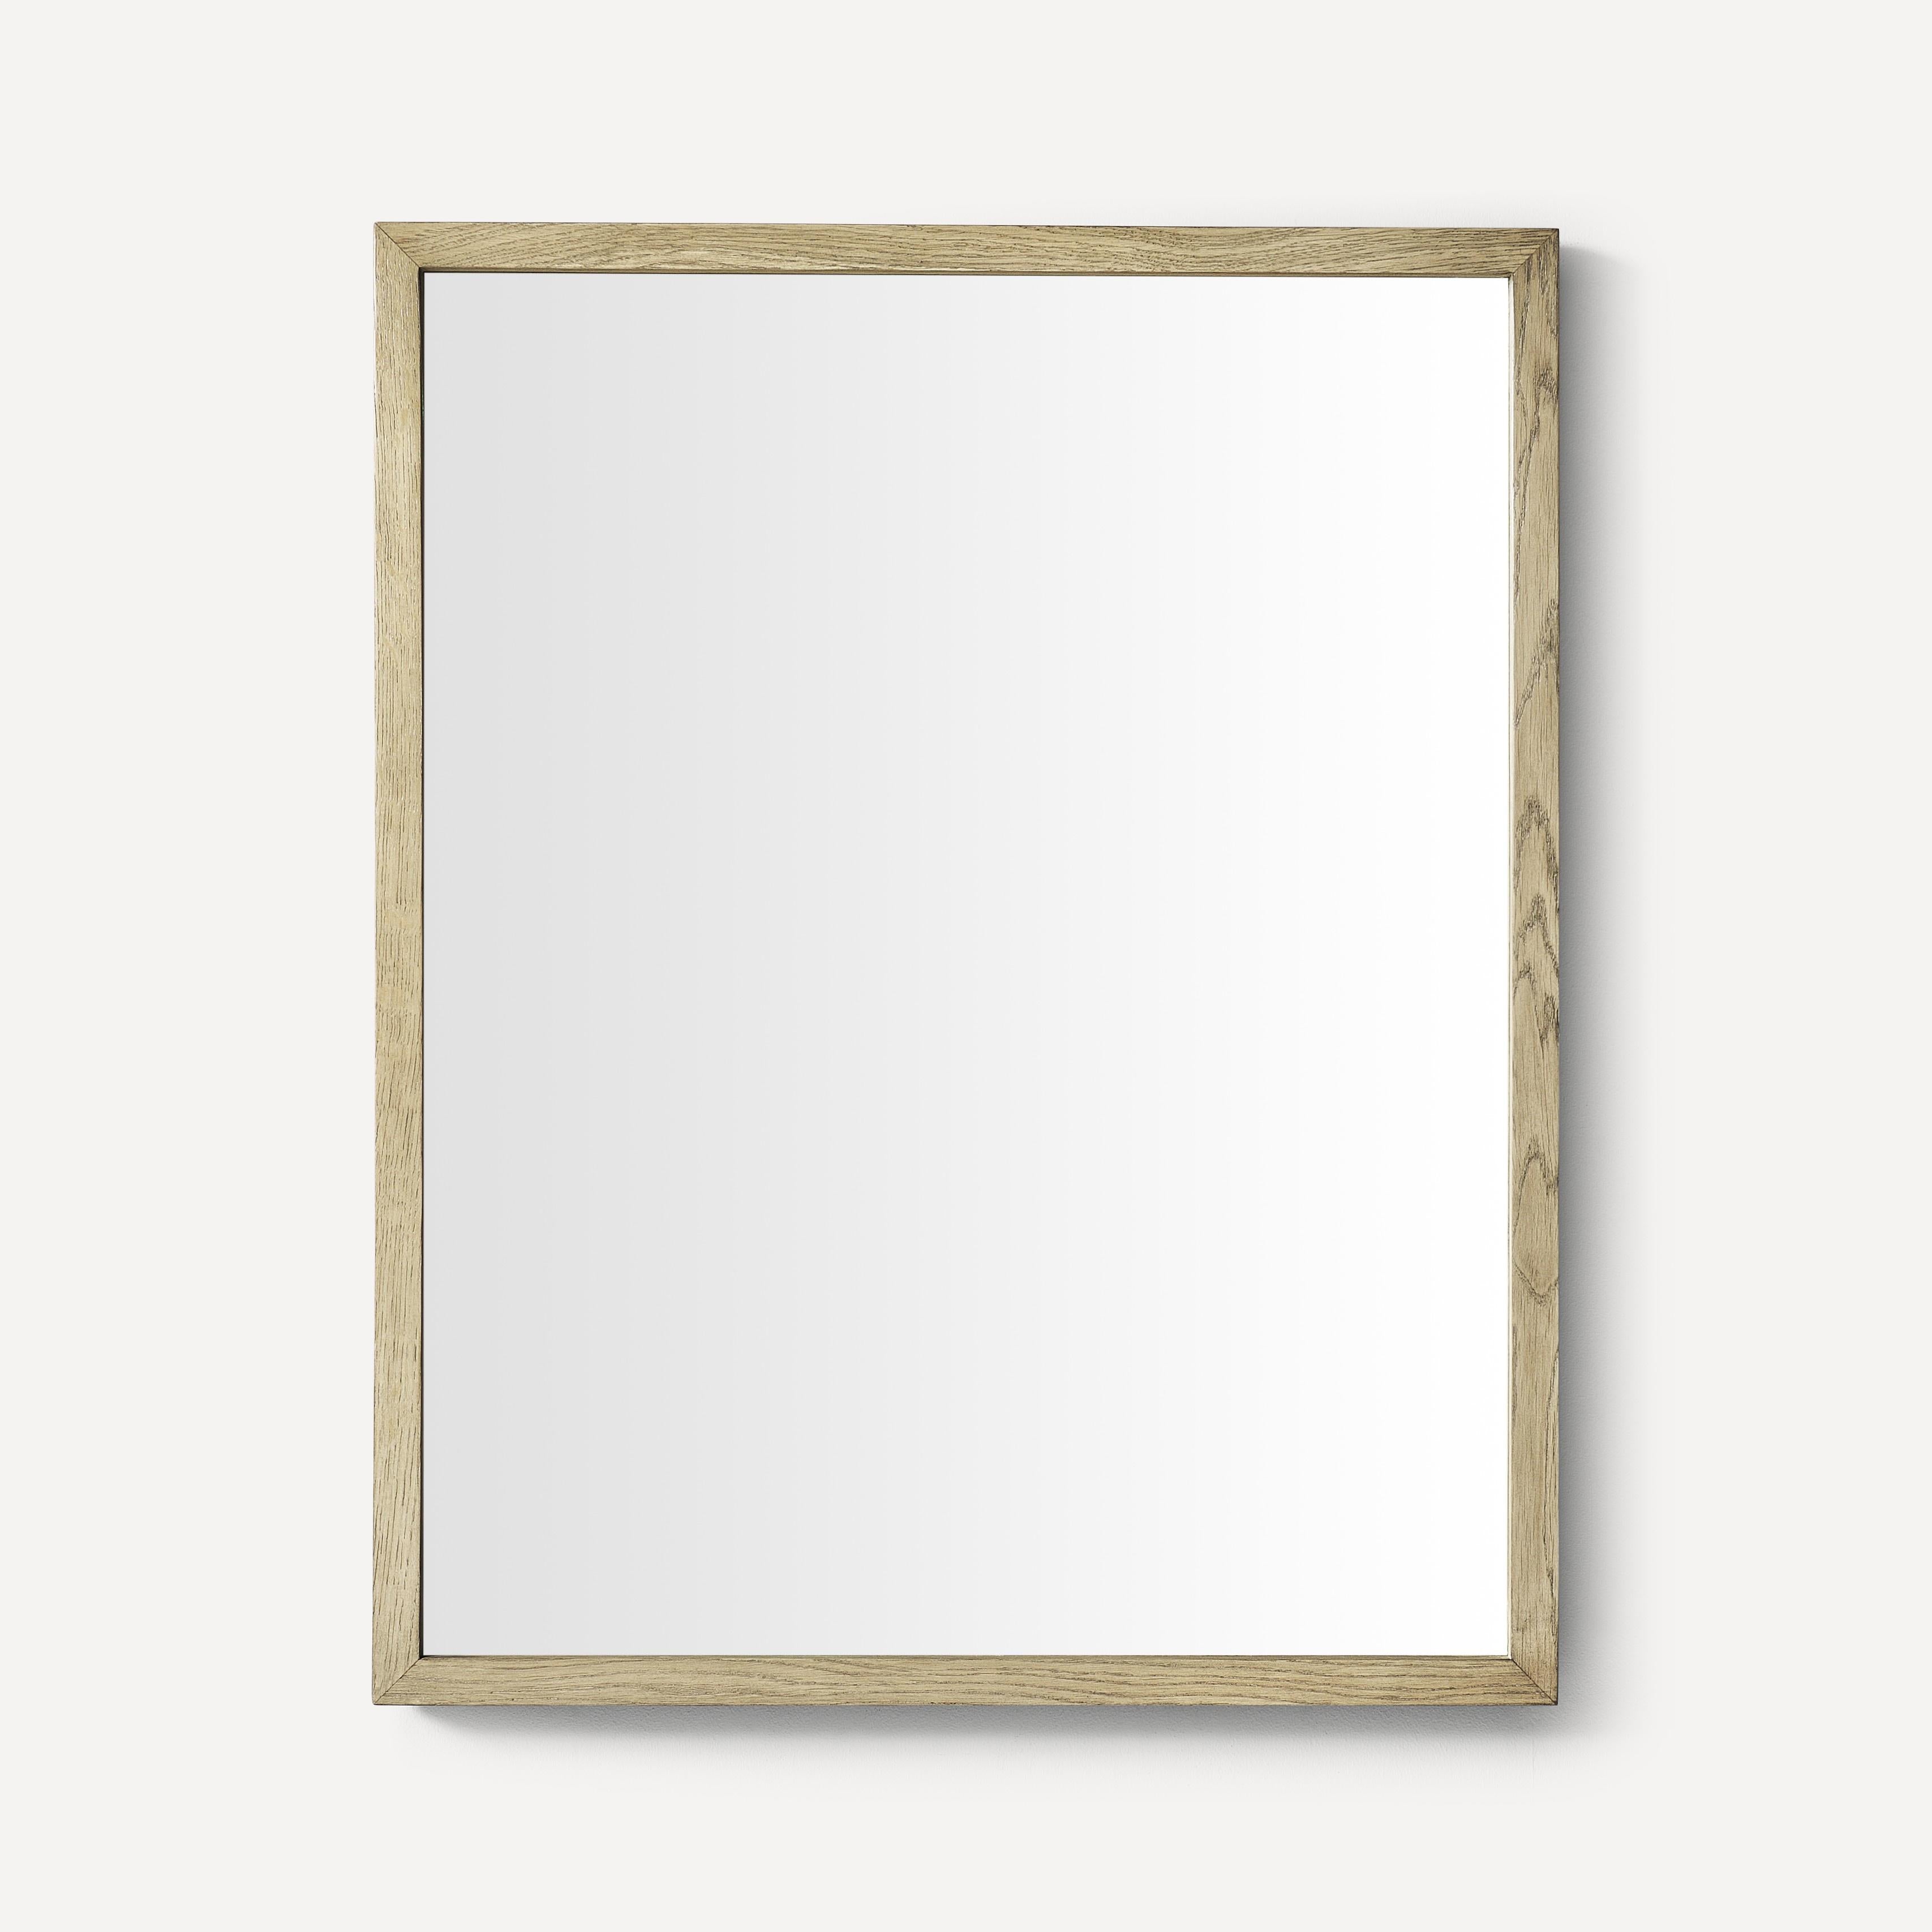 Robern Thin Framed Wood Mirror, 24"x 30"x 1-1/2"